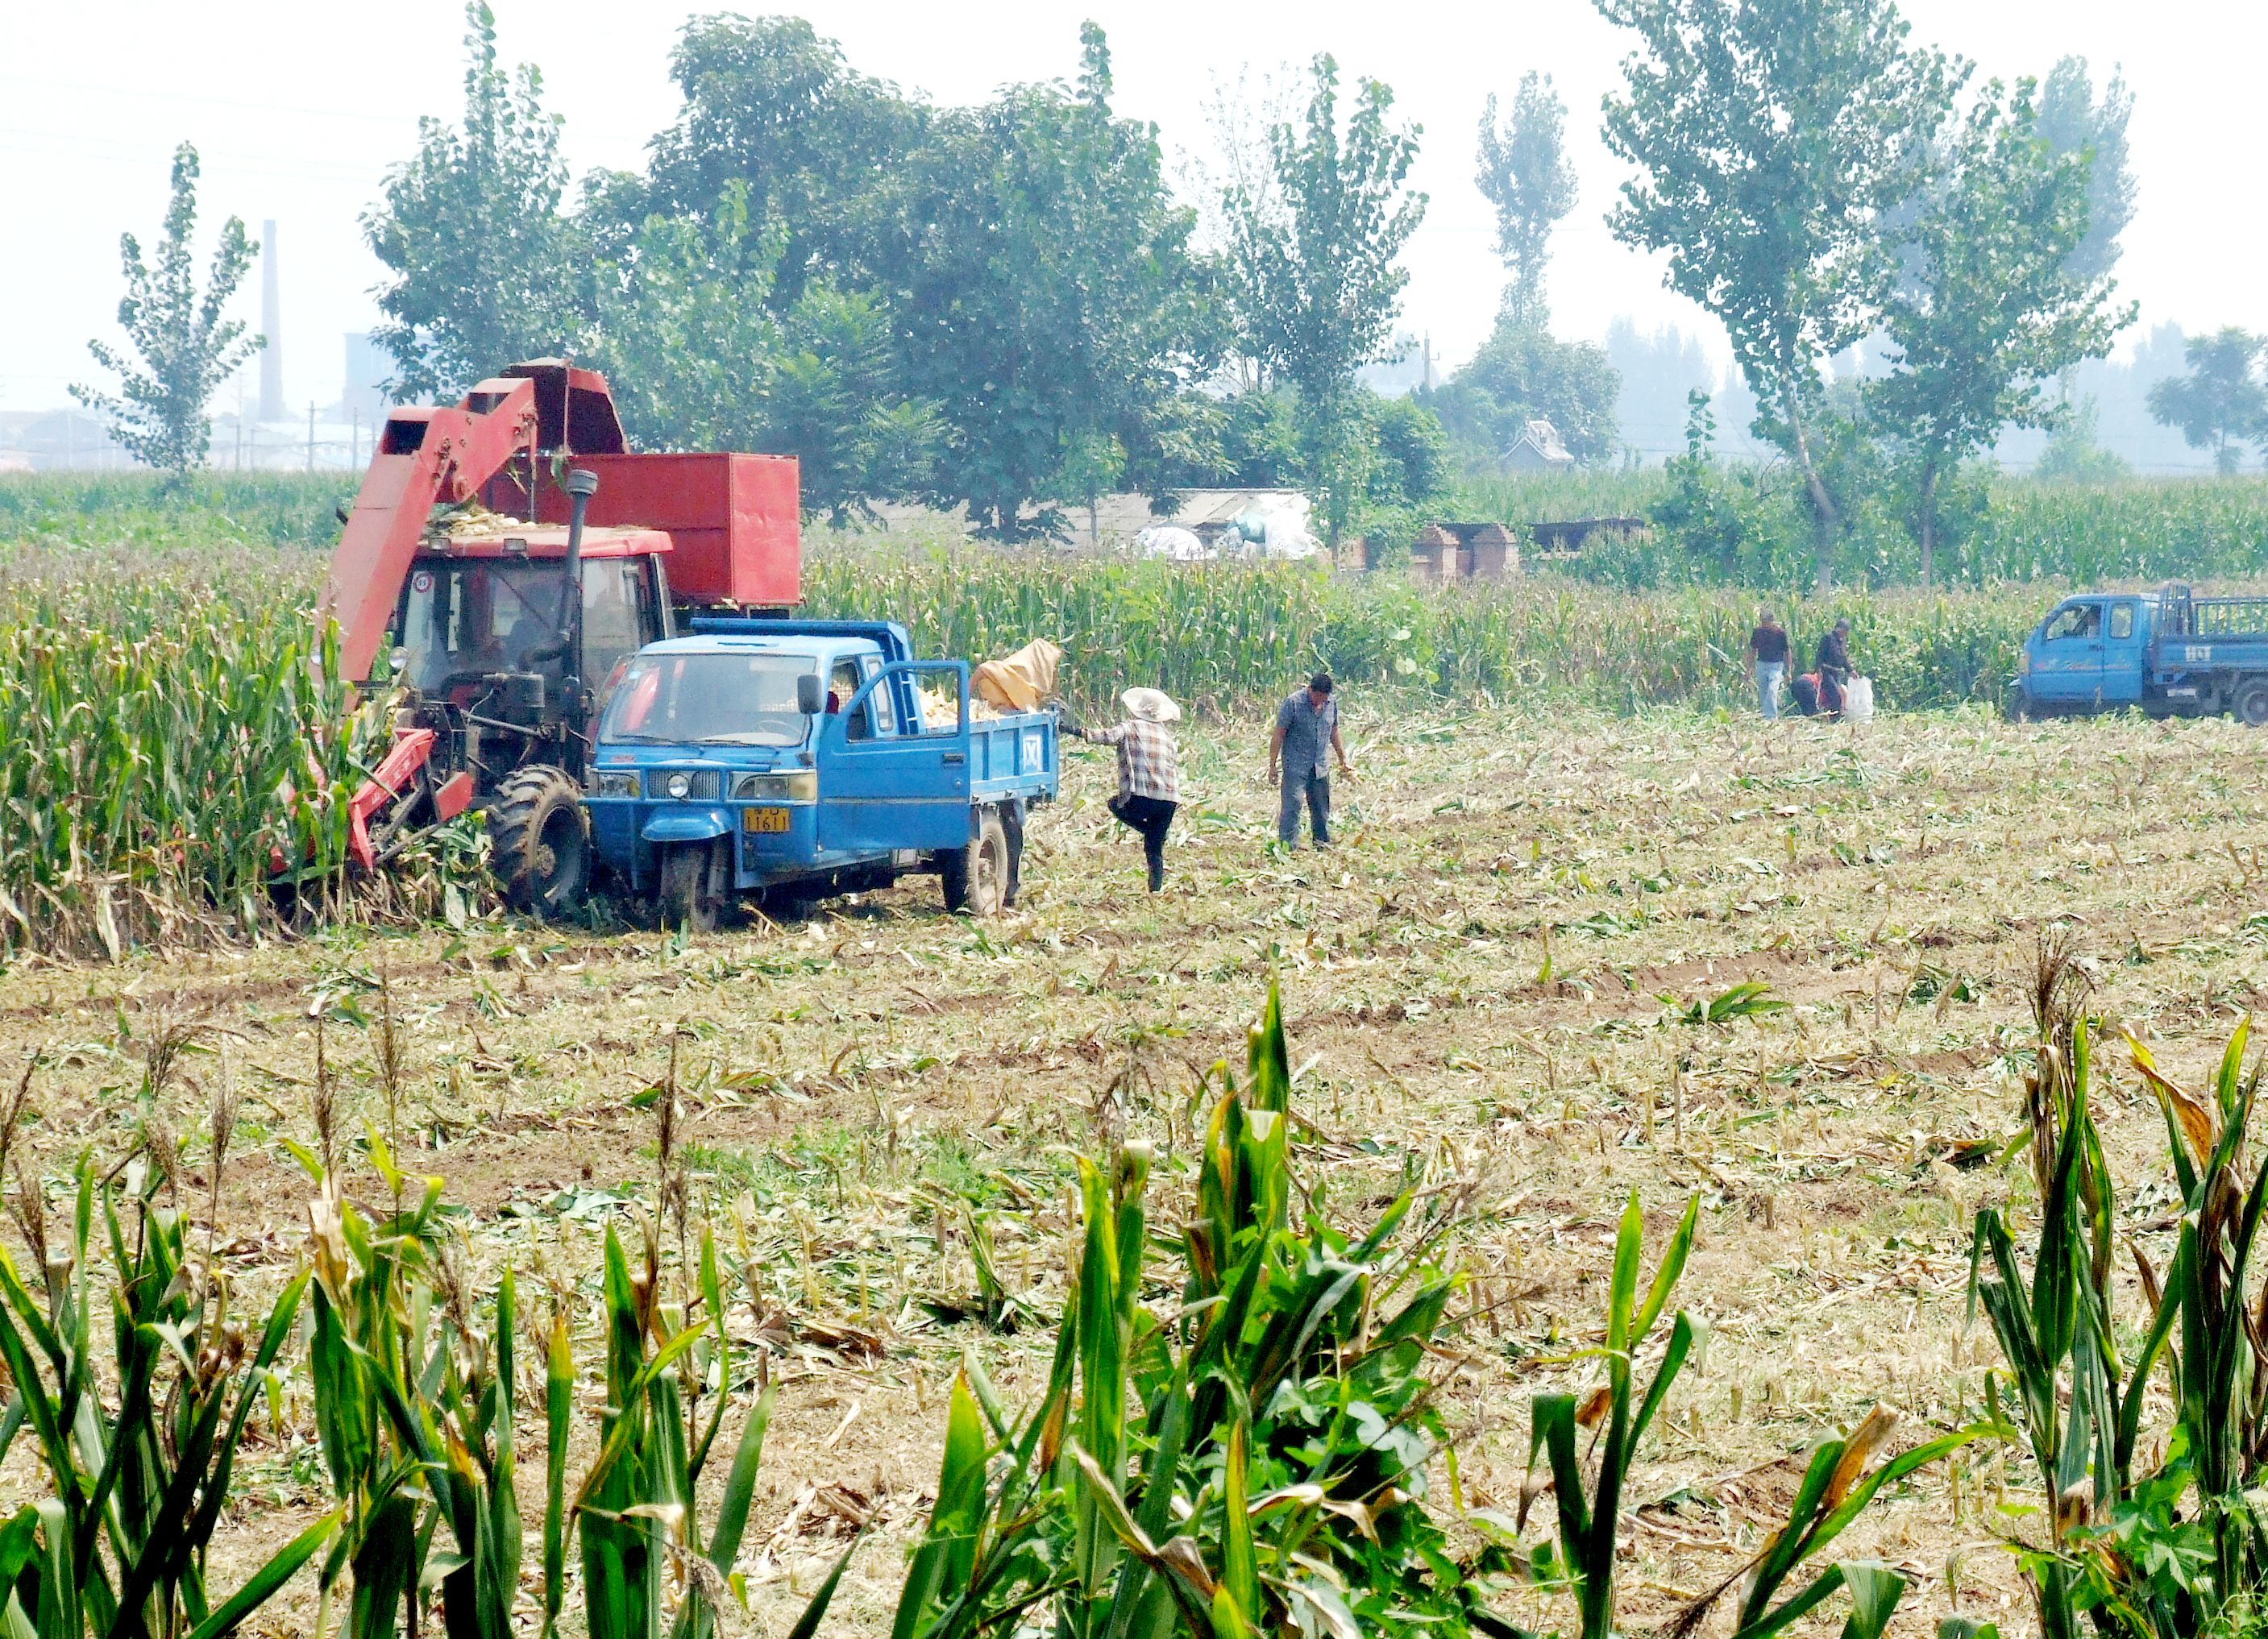 (图片)孟州:粮食生产机械化水平大幅提高